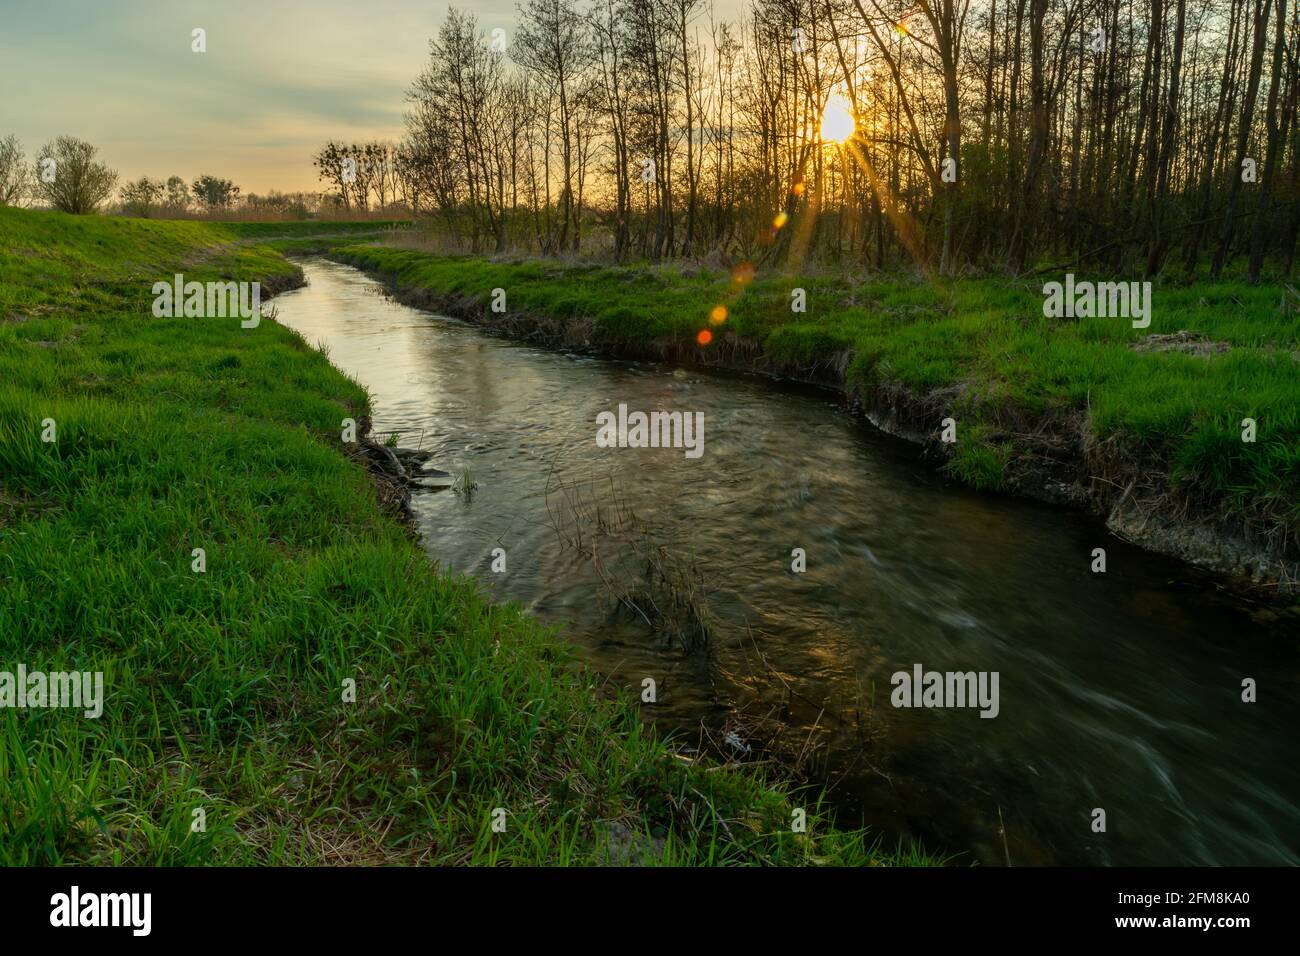 Ein kleiner Fluss mit einem grünen Ufer und einem Sonnenuntergang, Stankow, Polen Stockfoto